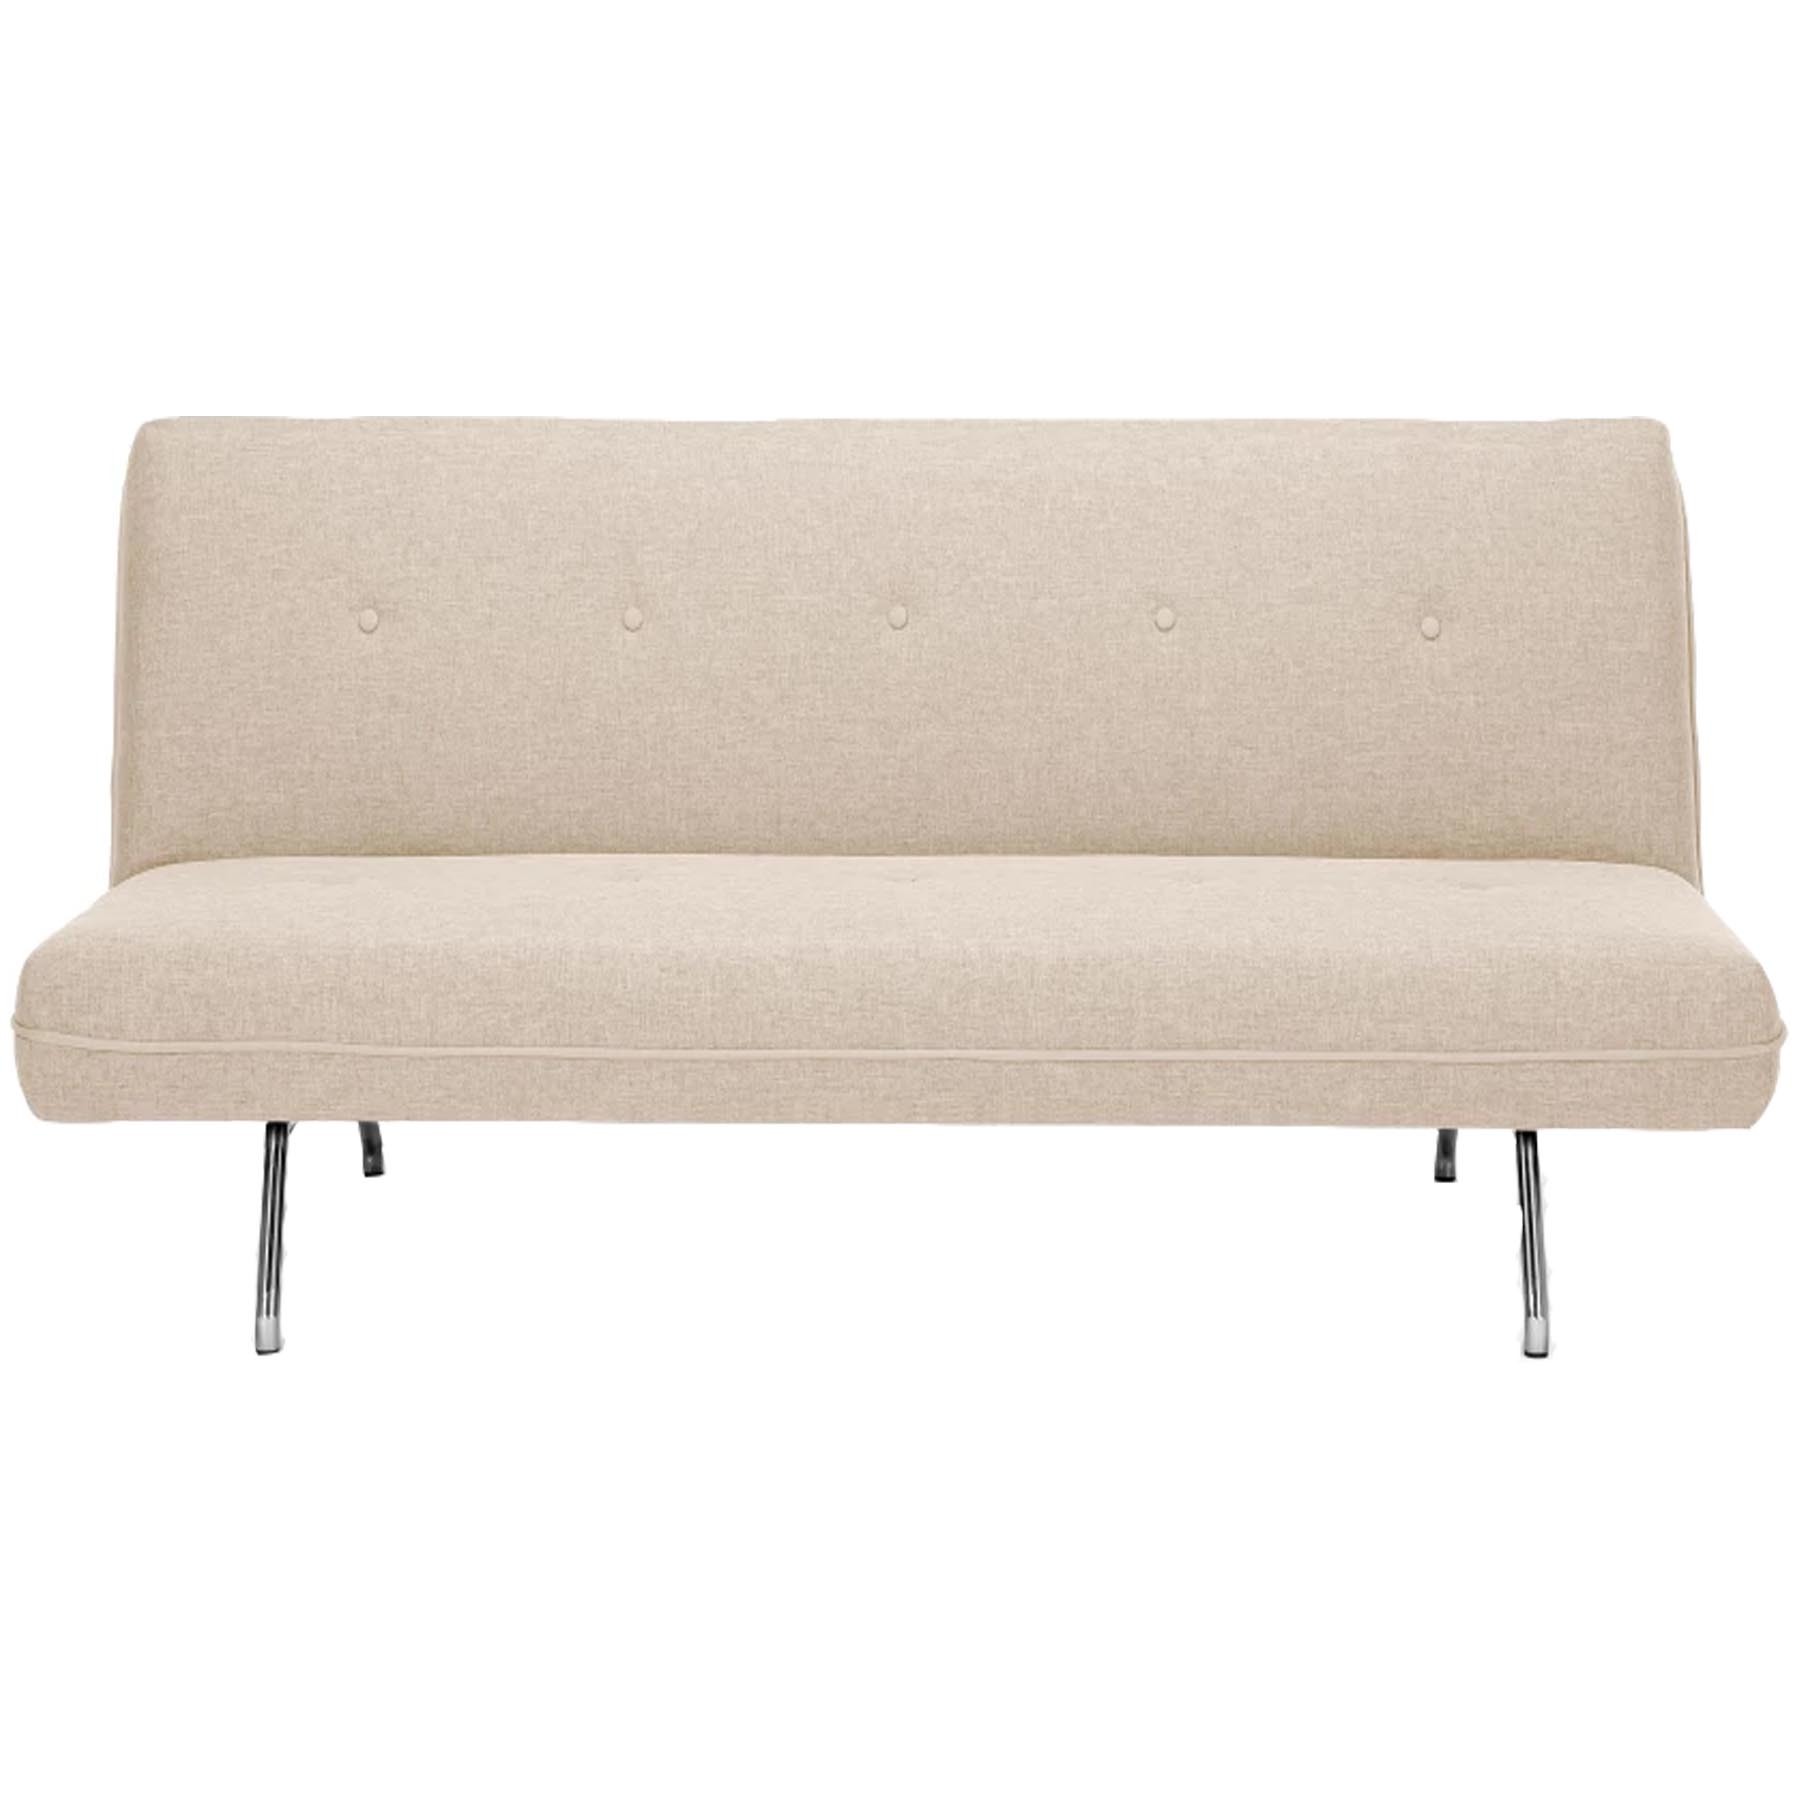 Sofa giường cao cấp Klosso M3 ( Kem )